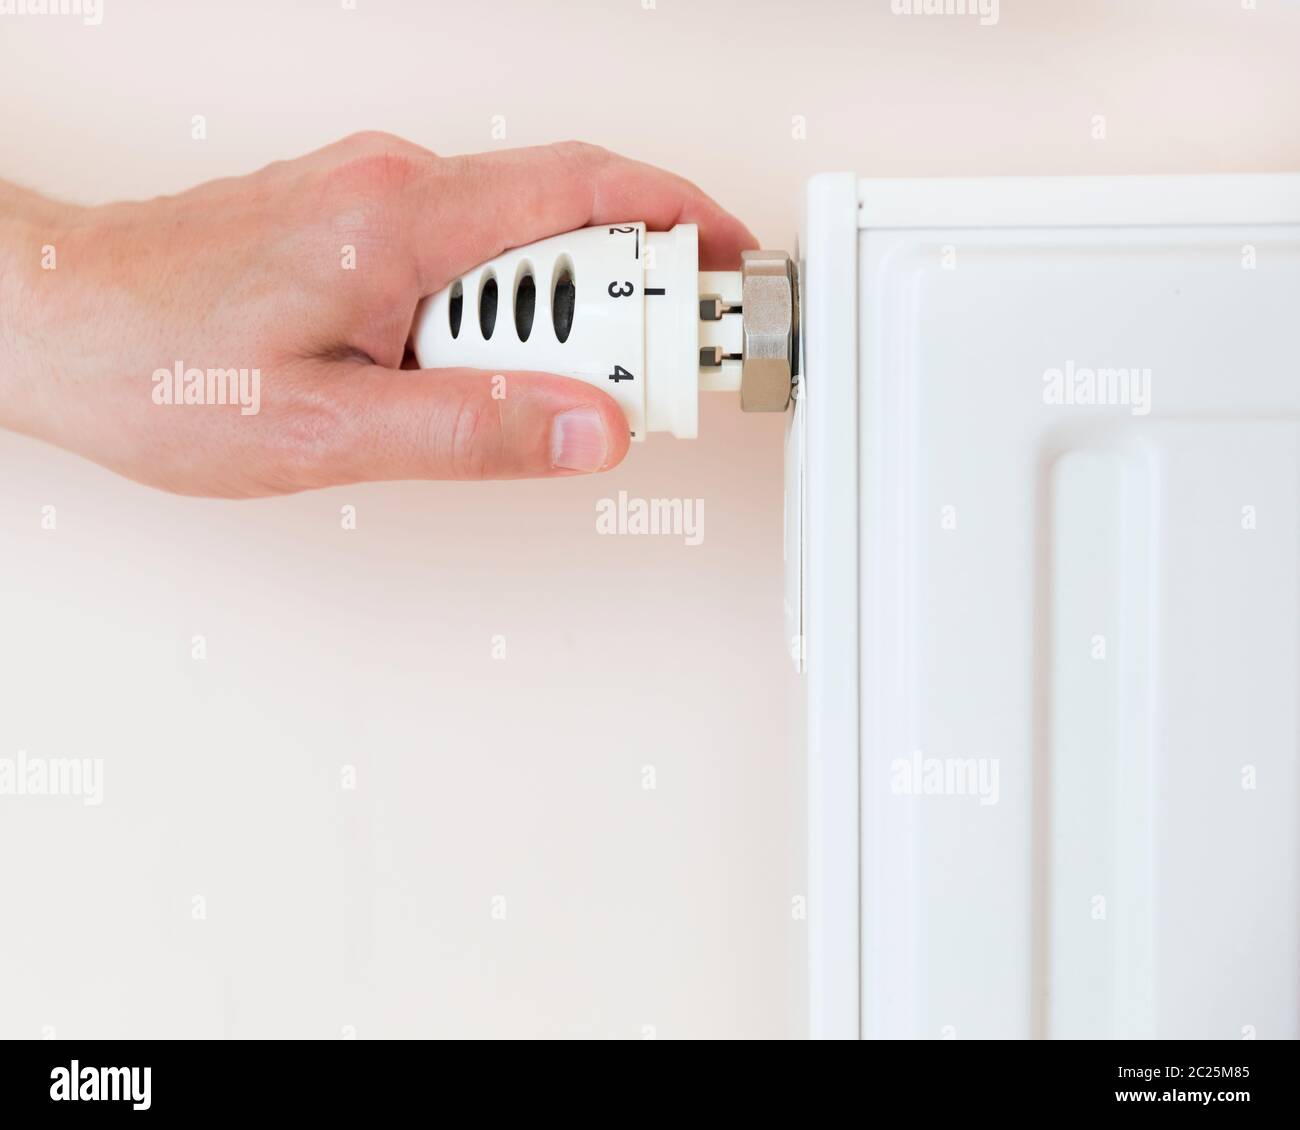 Von Hand einstellbares Thermostatventil des Heizkörpers in einem Raum. Stockfoto